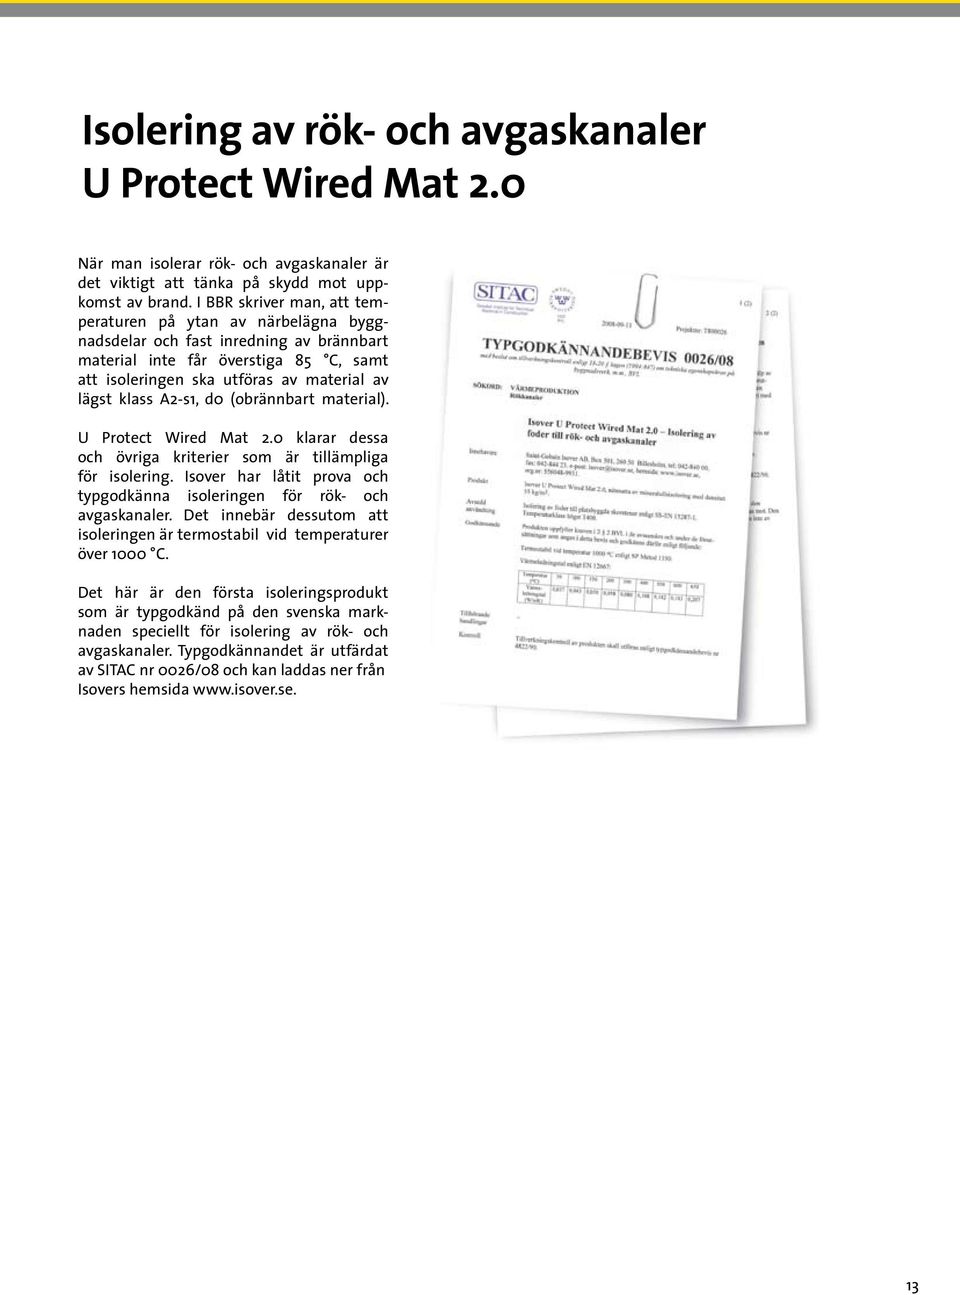 A2-s1, d0 (obrännbart material). U Protect Wired Mat 2.0 klarar dessa och övriga kriterier som är tillämpliga för isolering. har låtit prova och typgodkänna isoleringen för rök- och avgaskanaler.